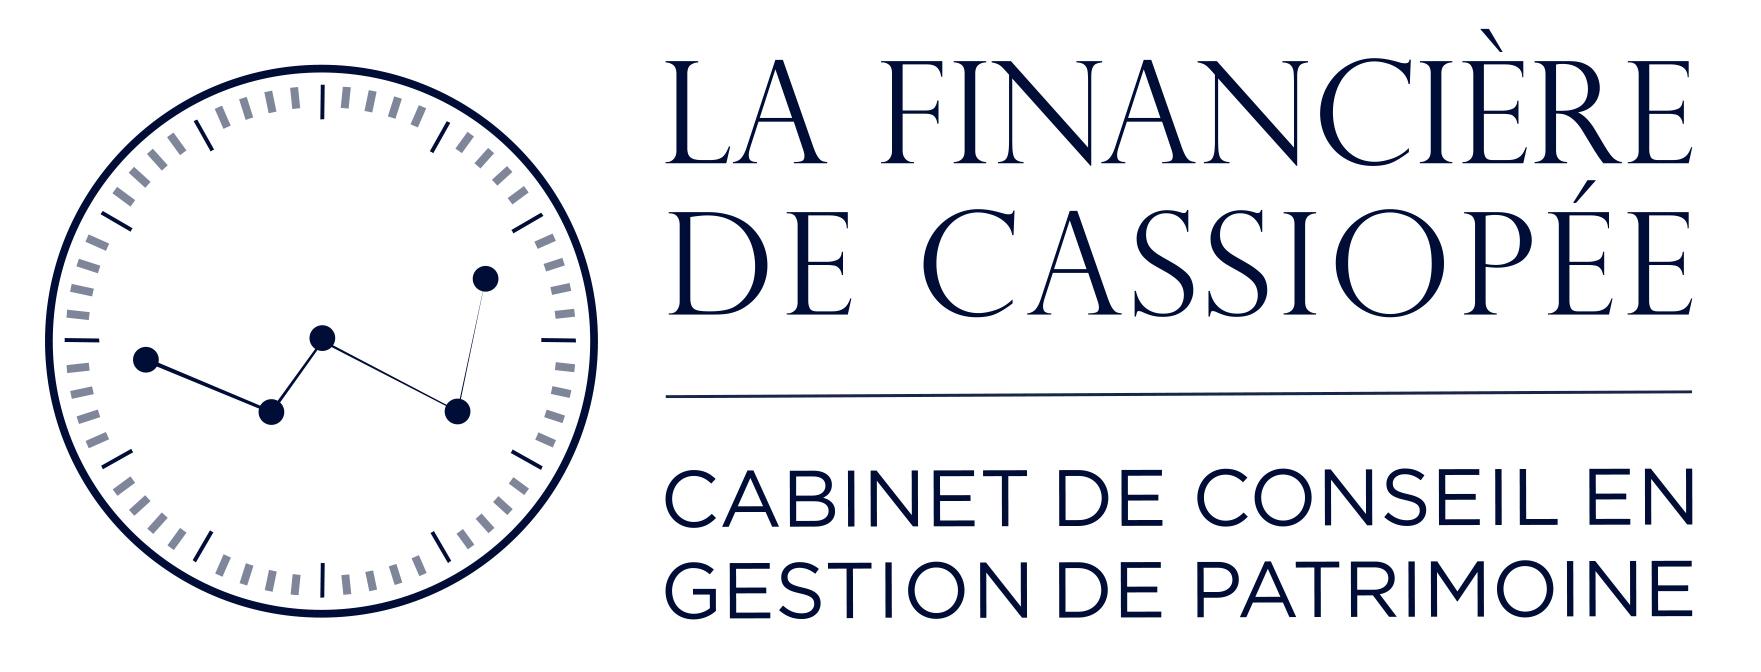 La Financière De Cassiopée - Cabinet De Conseil En Gestion De Patrimoine à Enghien Les Bains Enghien Les Bains